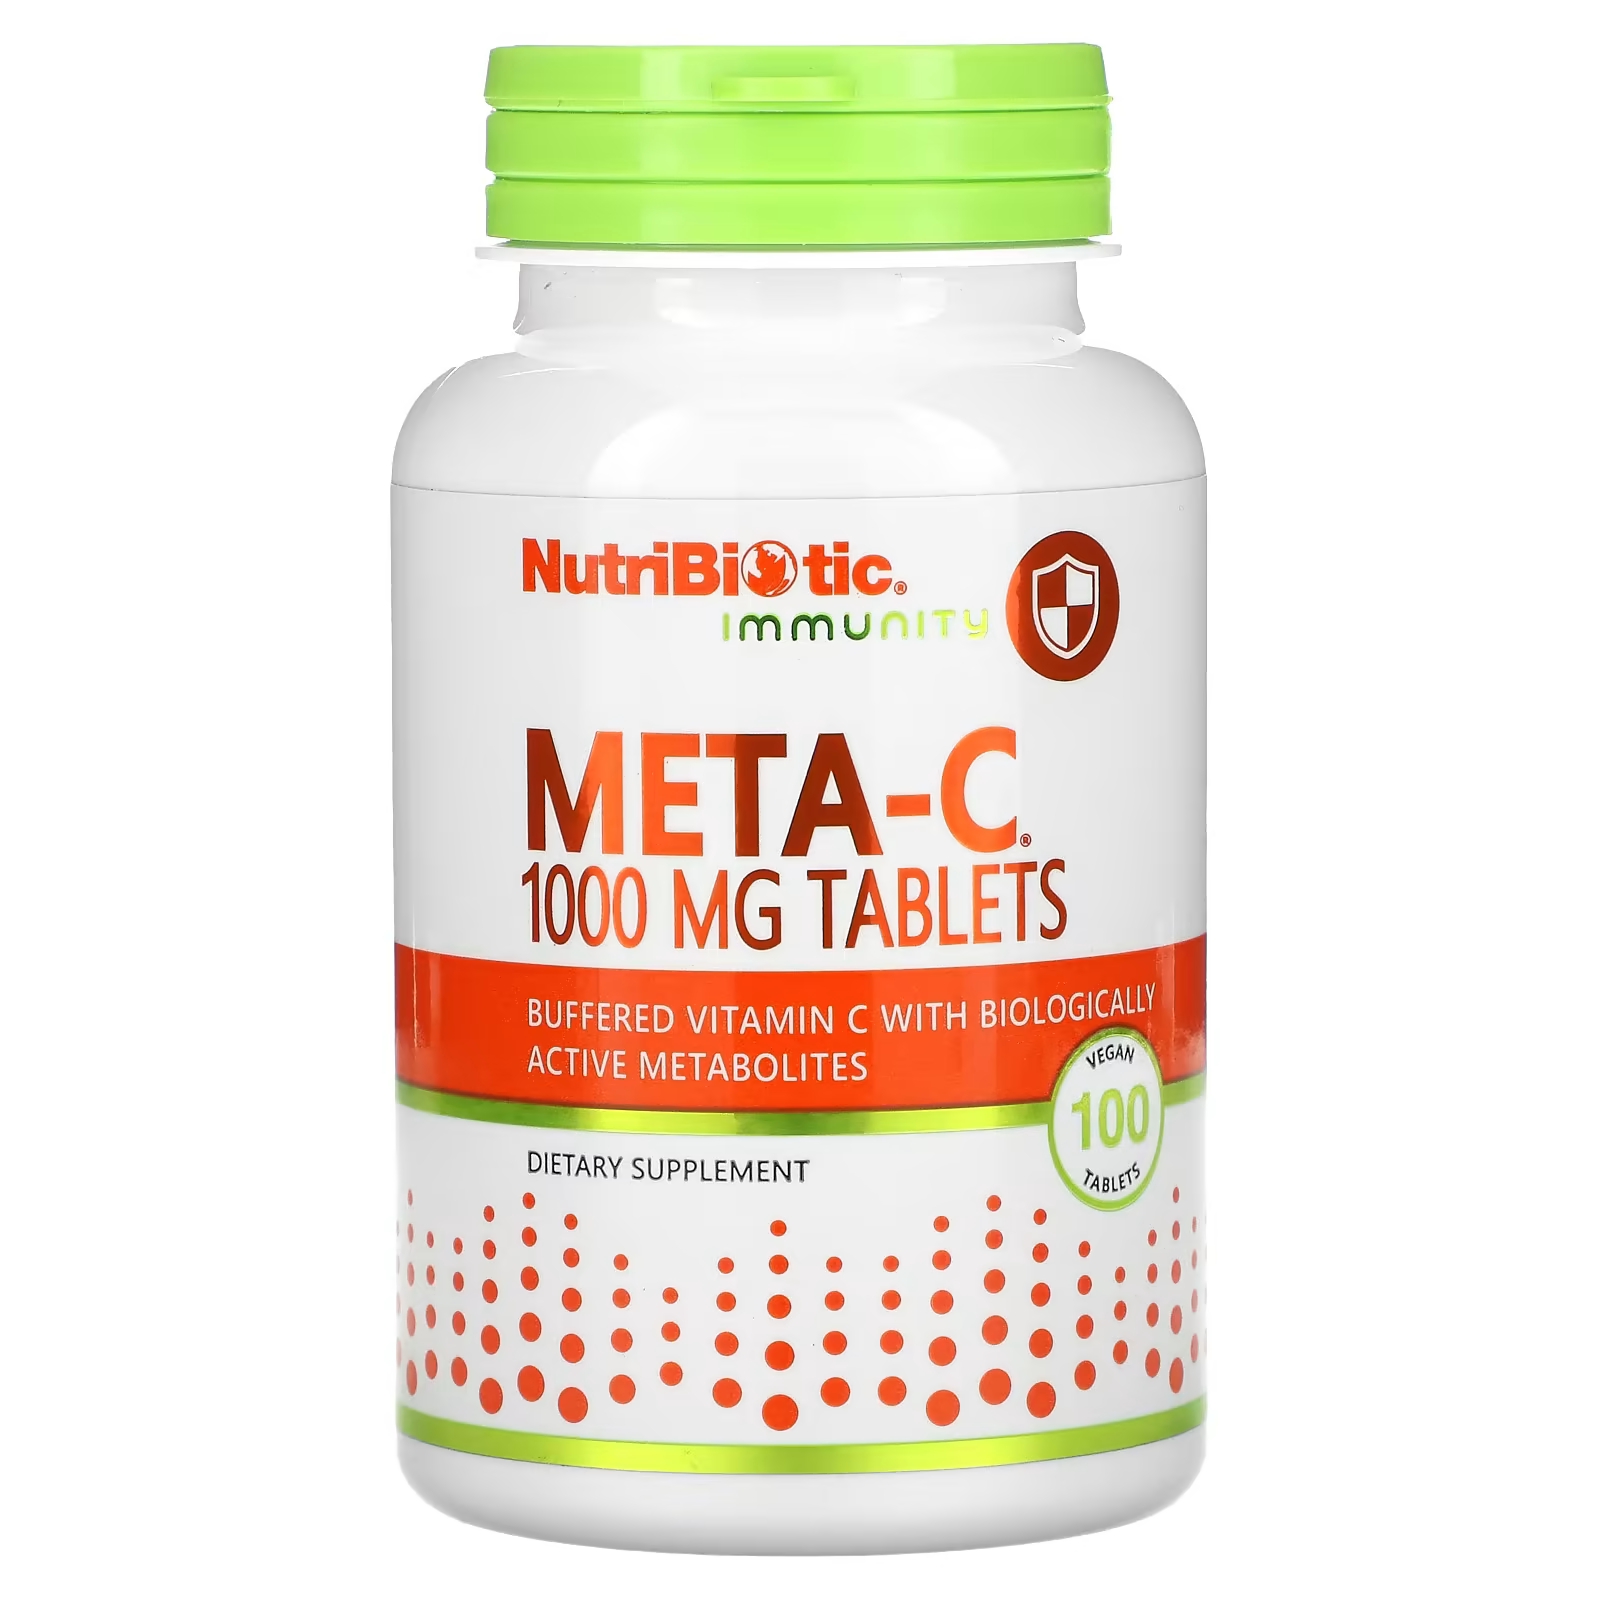 Пищевая добавка NutriBiotic Immunity Meta-C 1000 мг, 100 веганских таблеток